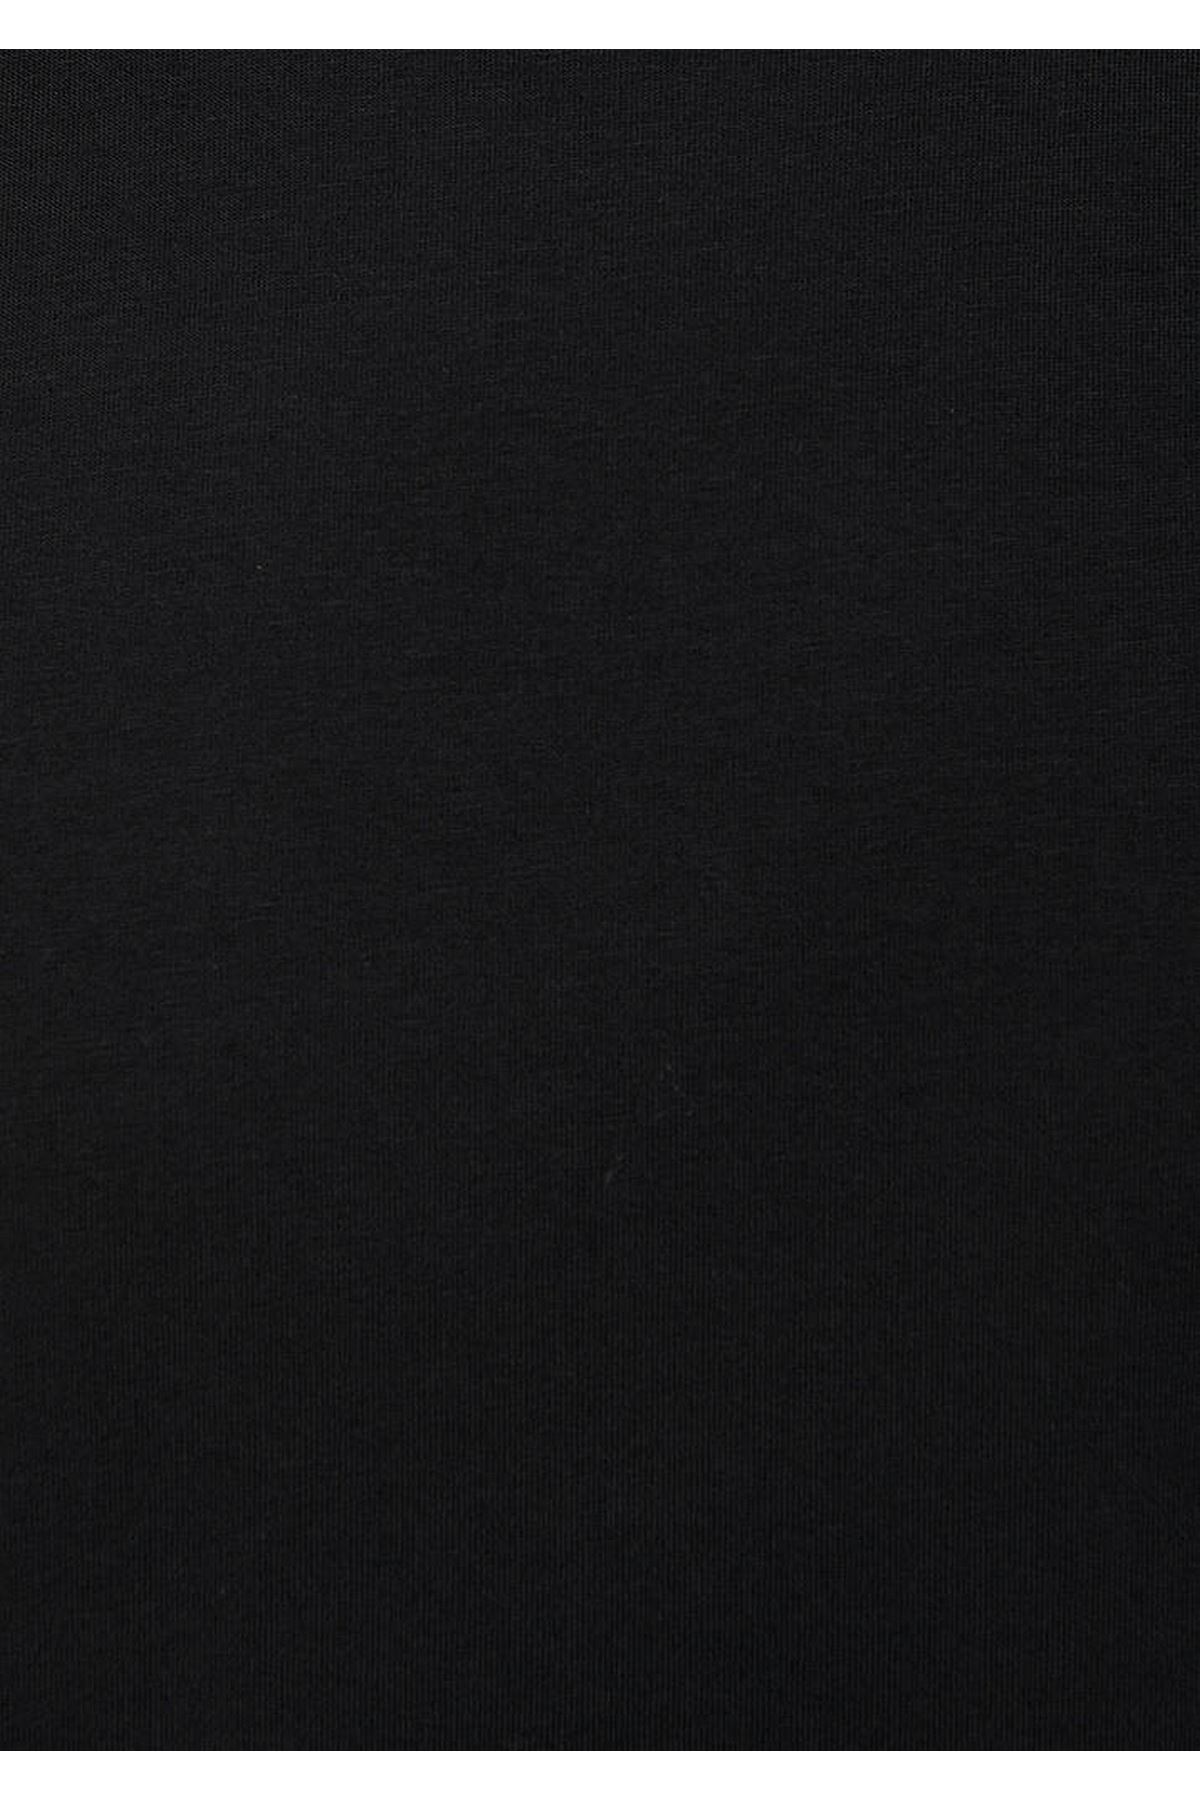 Bisiklet Yaka  Mavi Erkek Siyah Tişört - M0610136-900